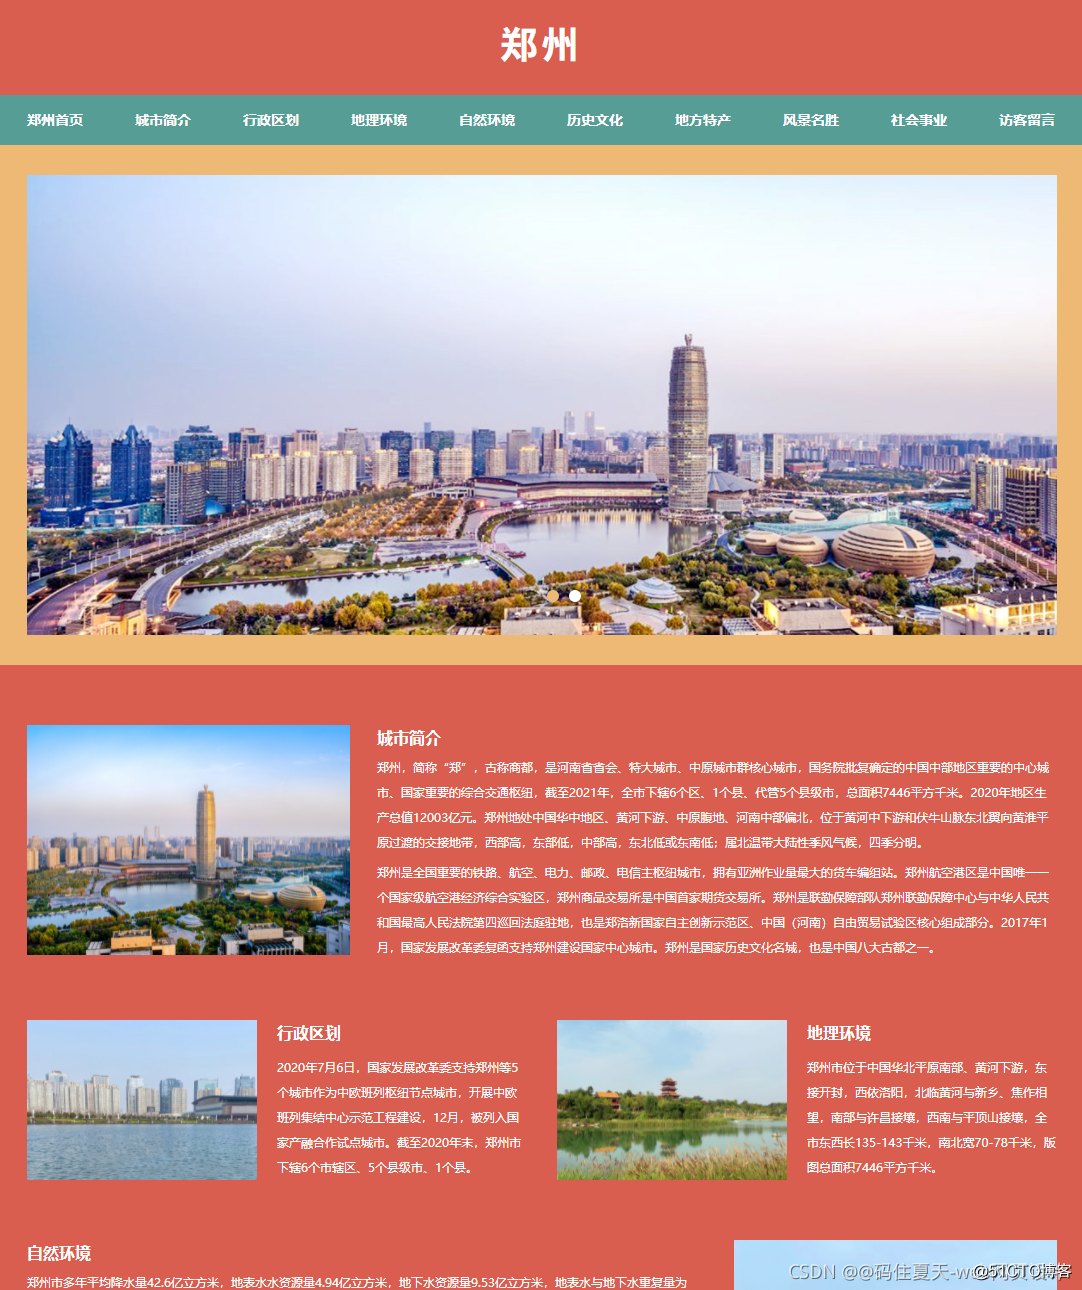 郑州网站建设系统企业排名_(郑州网站建设系统企业排名第一)